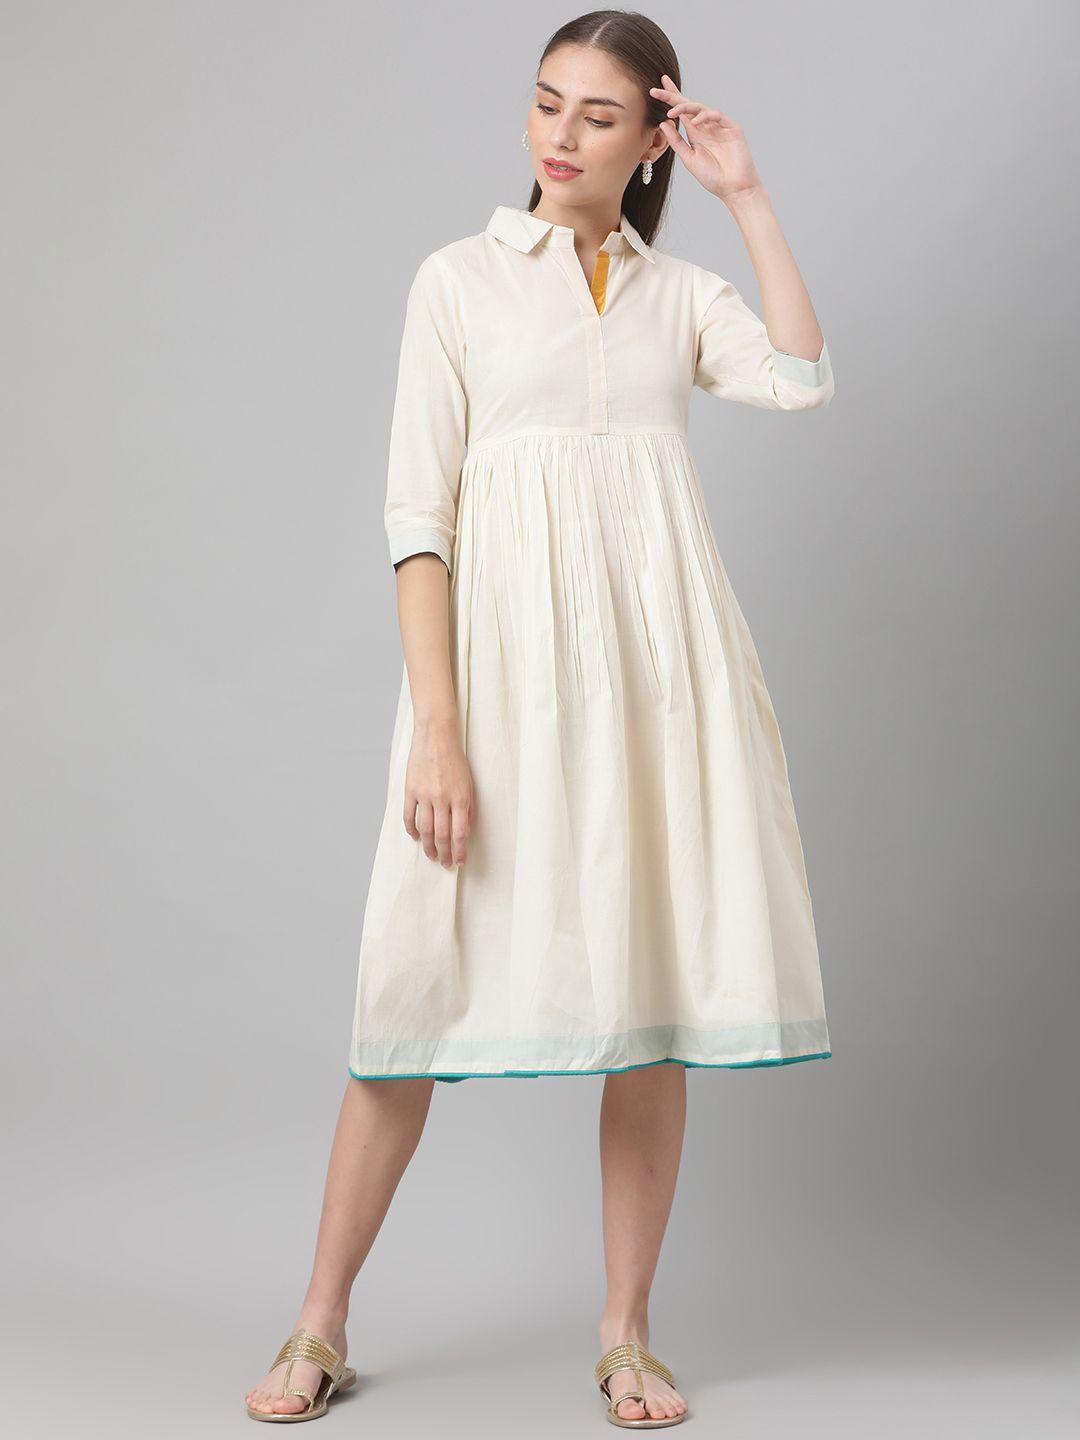 mbe white a-line dress